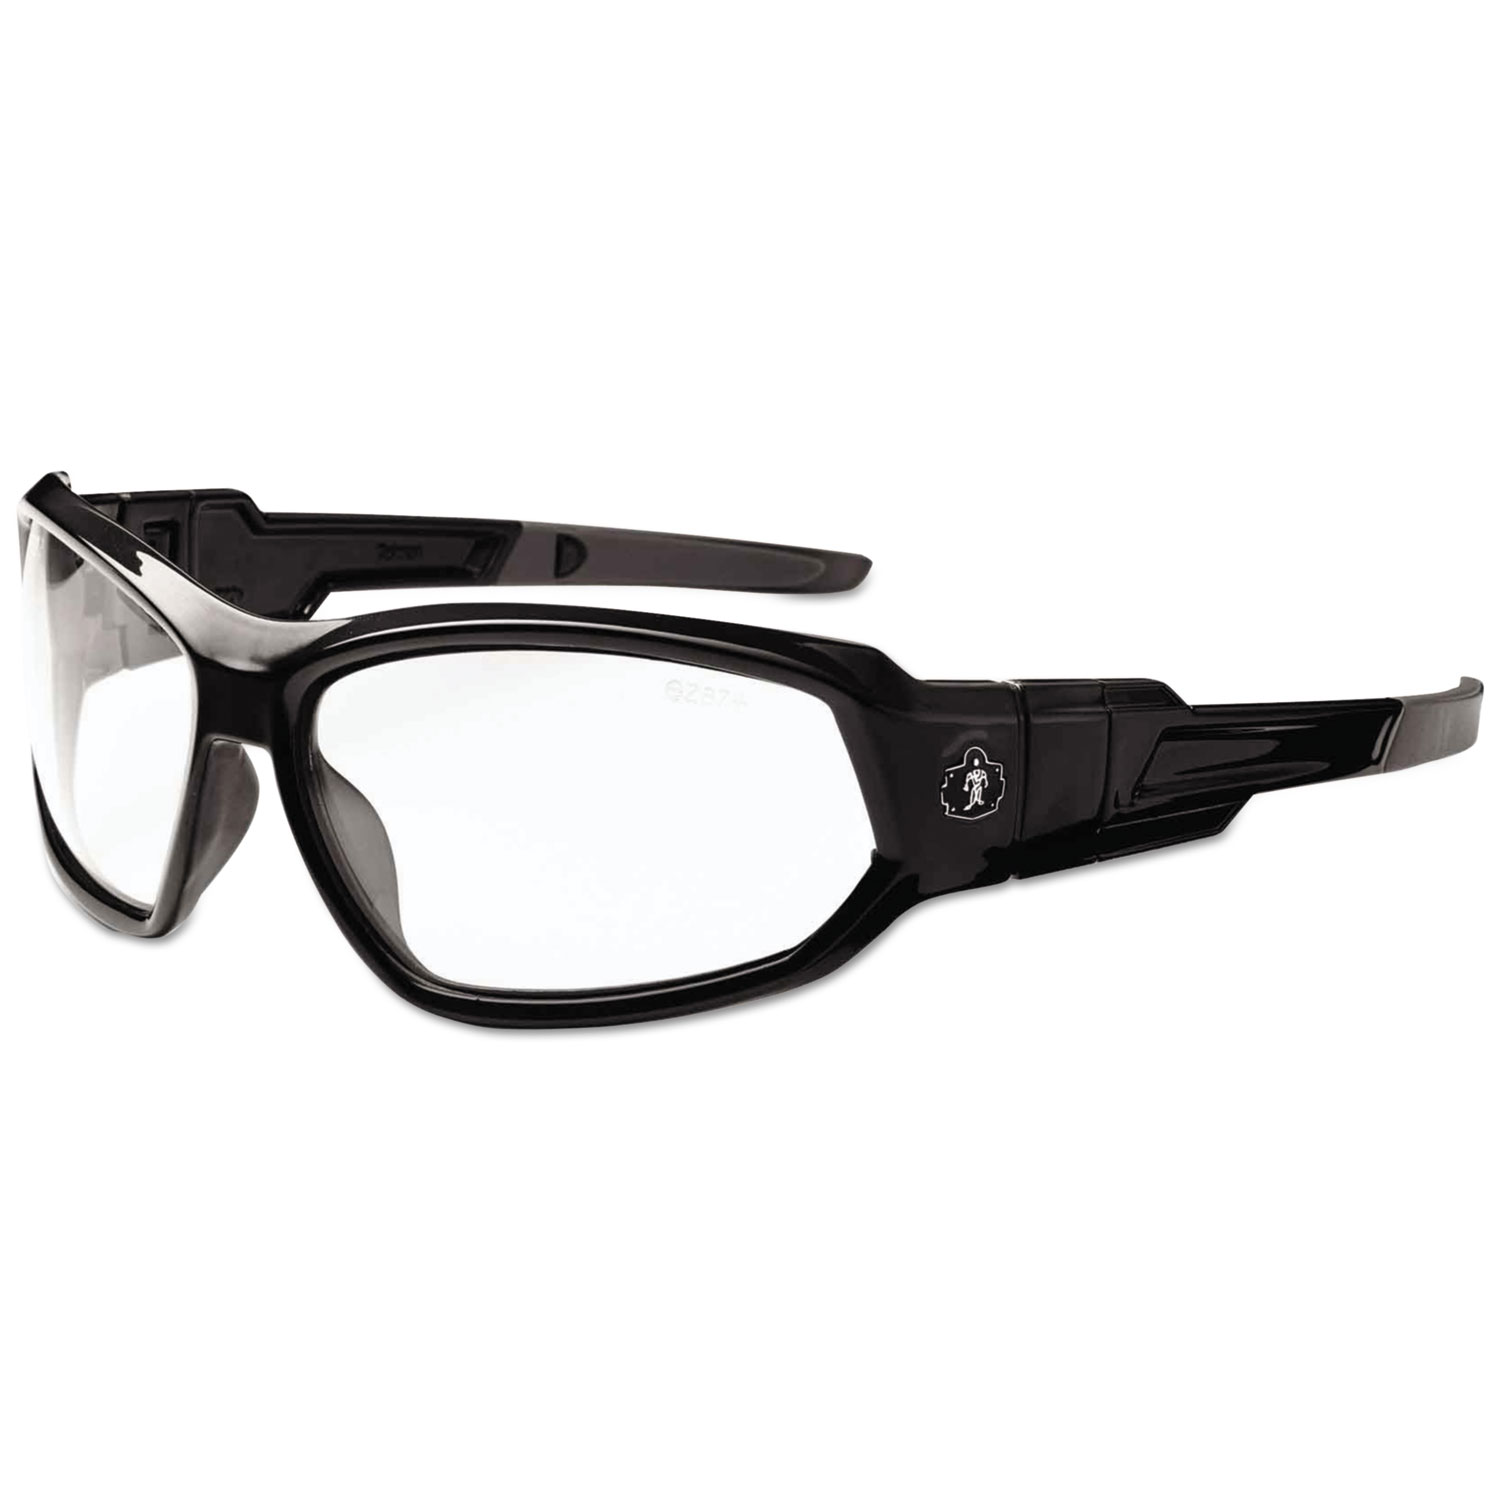 Skullerz Loki Safety Glasses/Goggles, Black Frame/Clear Lens